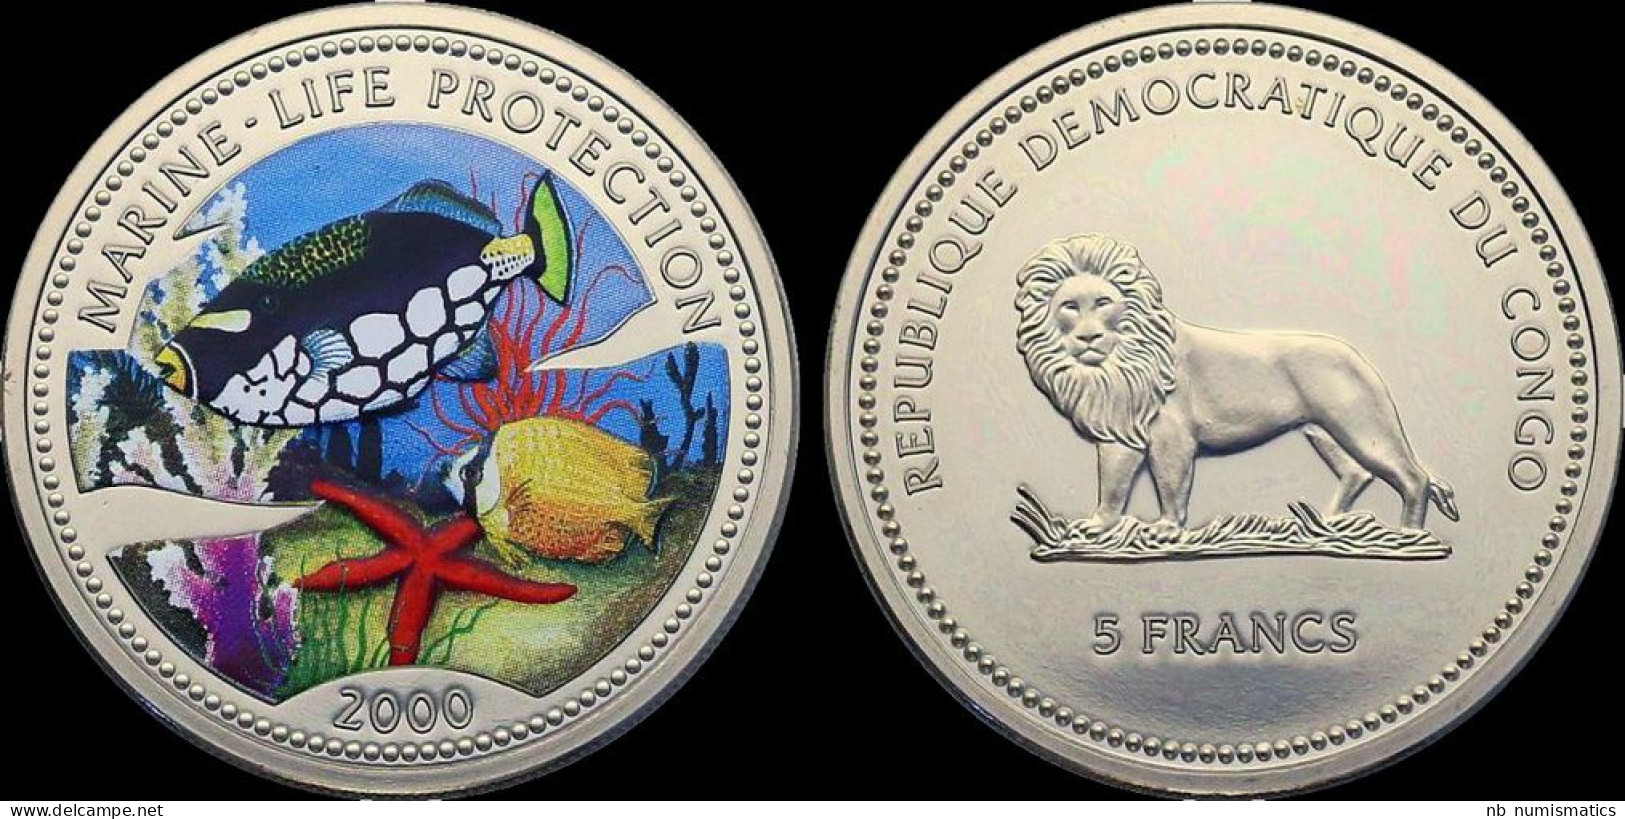 Republique Democratique Du Congo 5 Francs 2000 Marine-life Protection Proof In Plastic Capsule - Congo (República Democrática 1998)